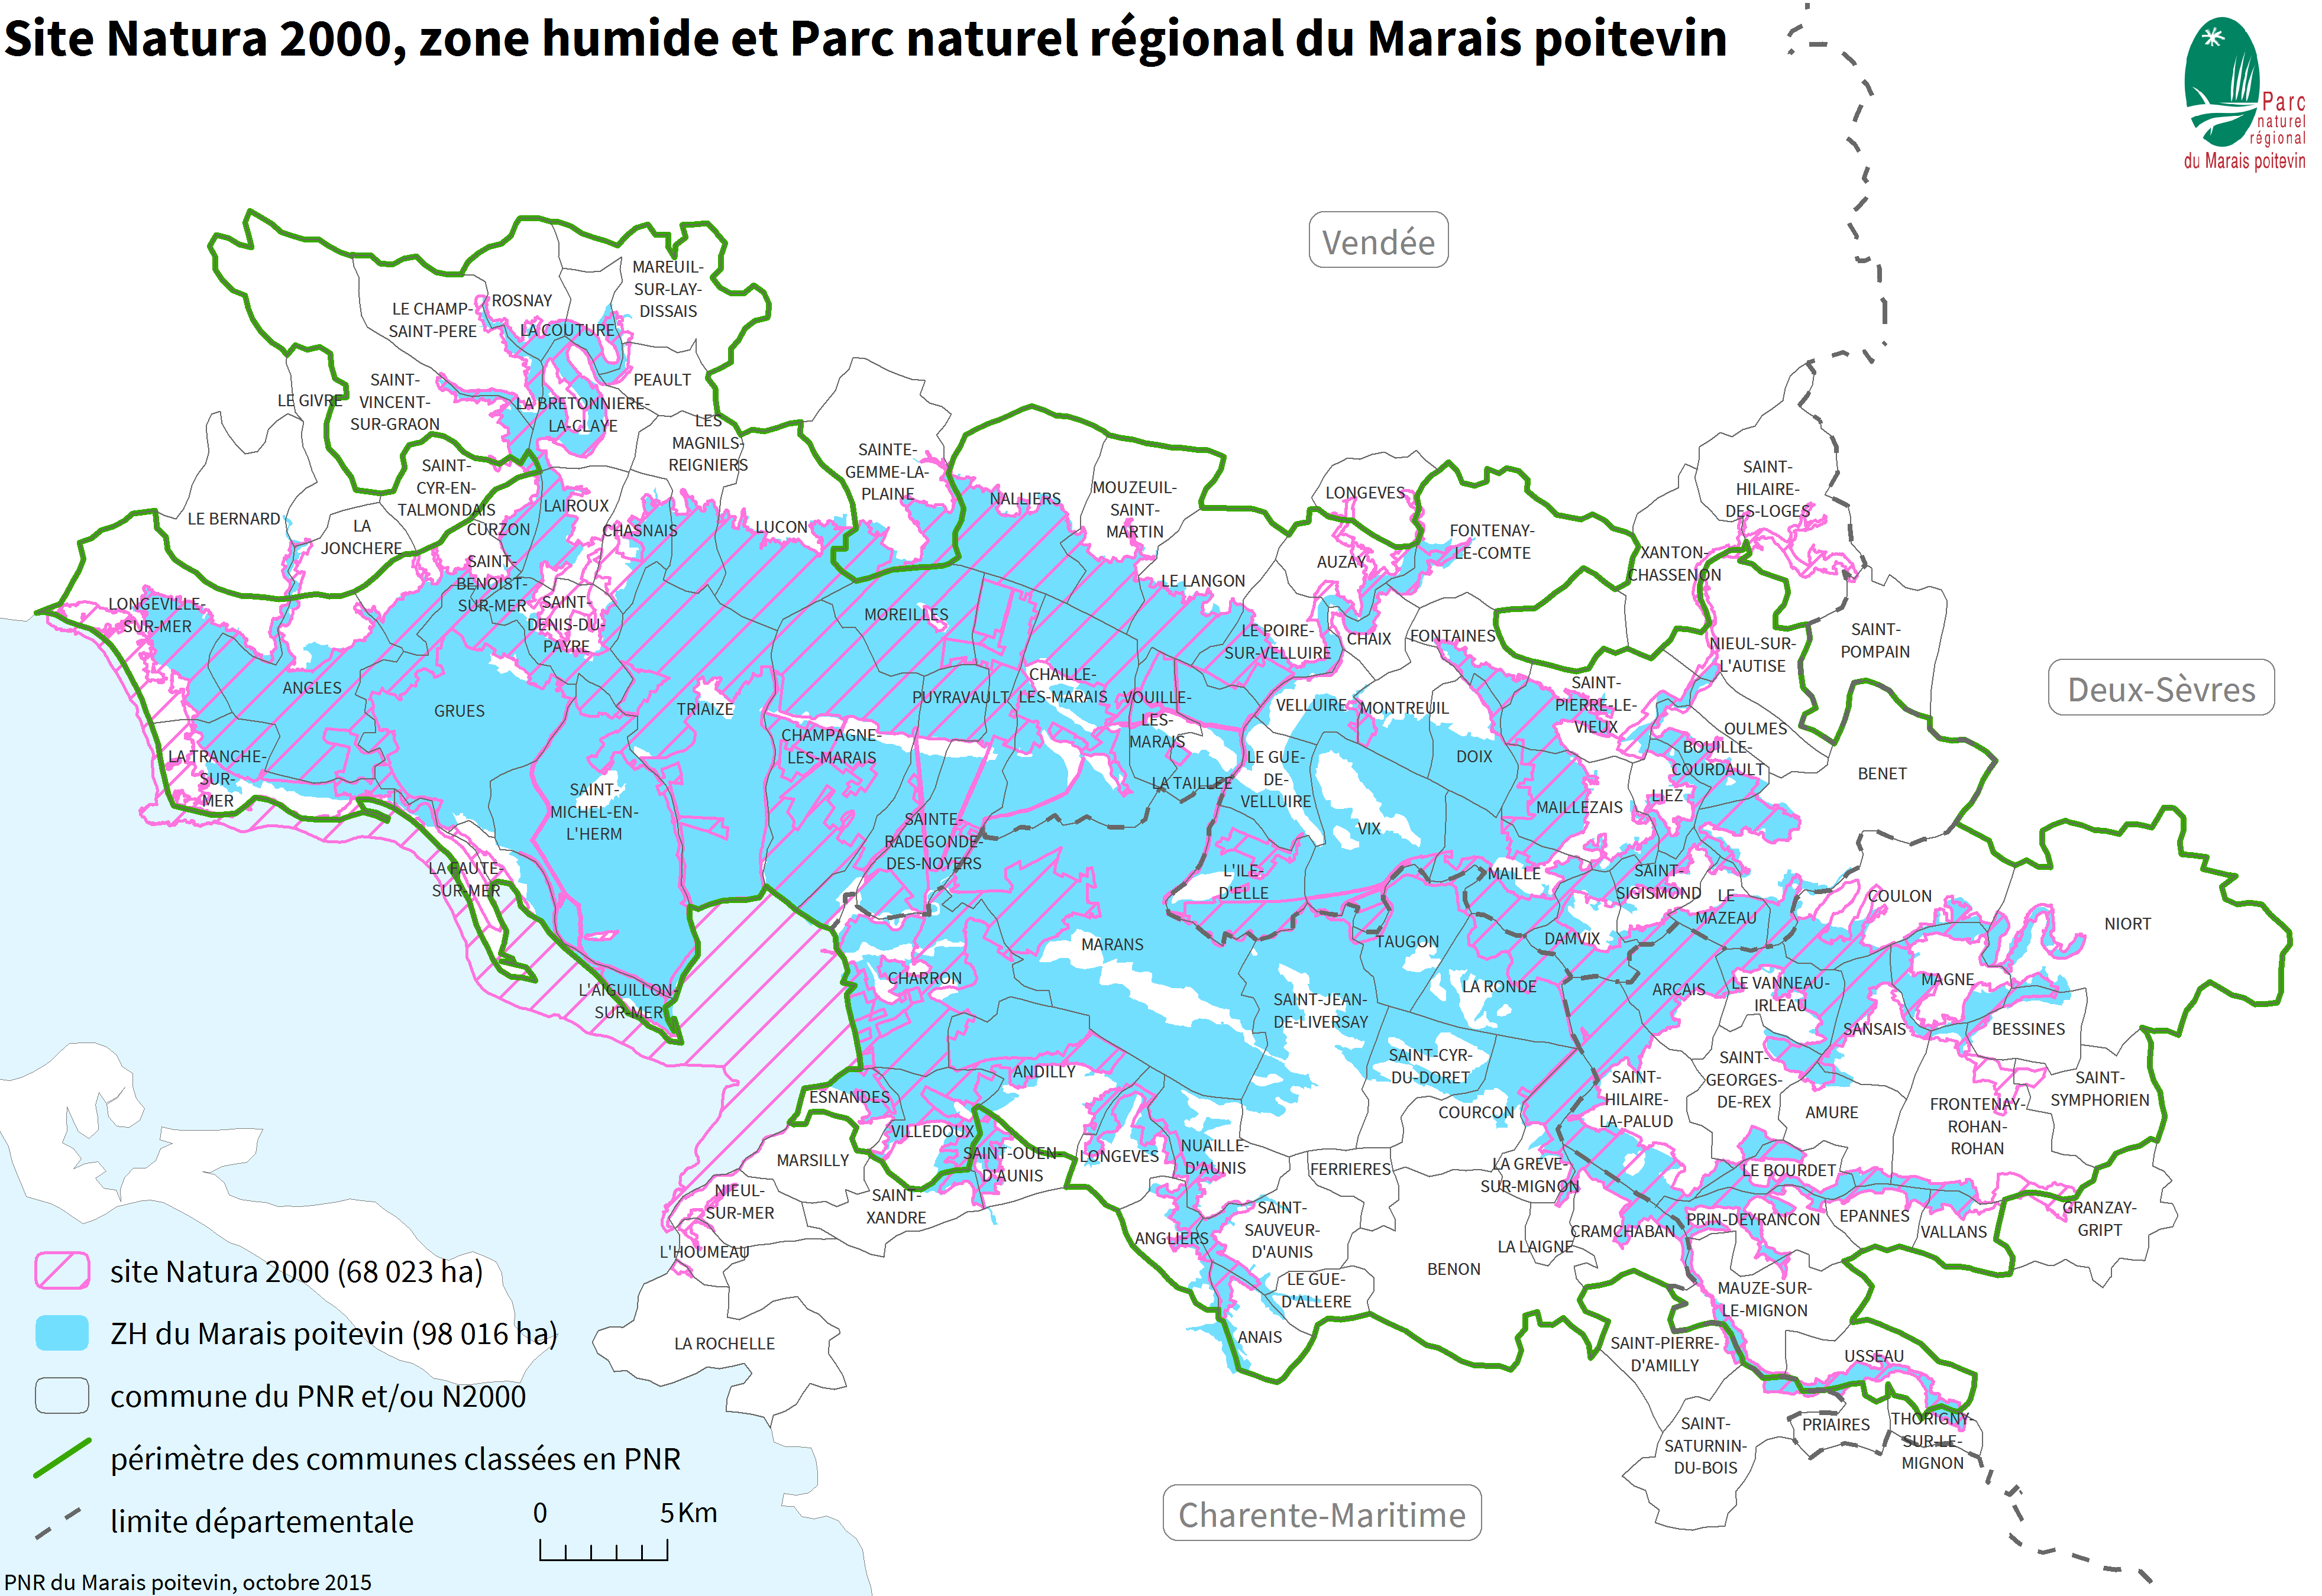 Carte du site Natura 2000, de la zone humide et du Parc naturel régional du Marais poitevin